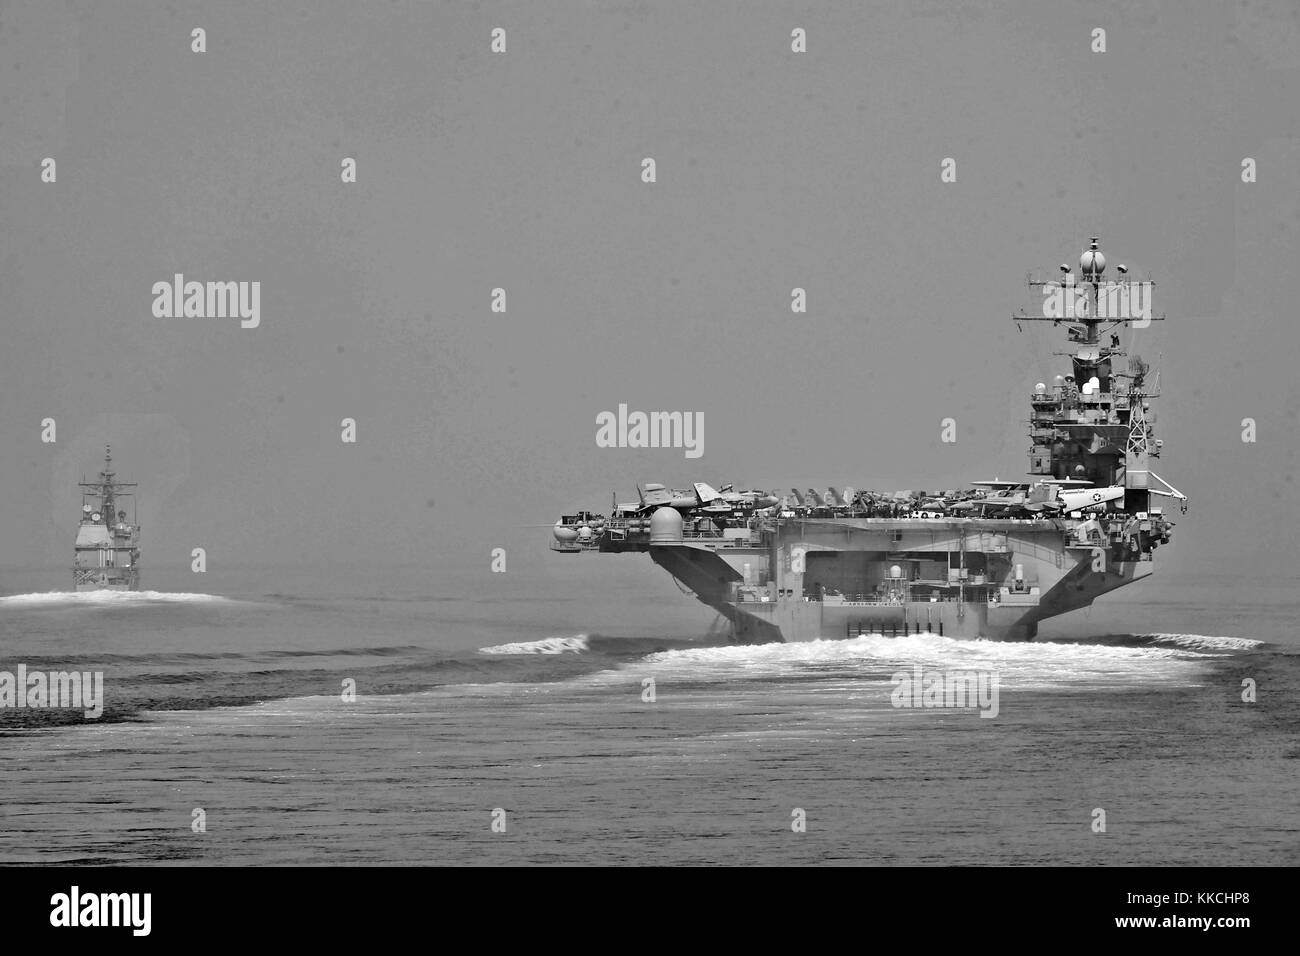 Die geführte-missile Cruiser USS Cape St. George CG71 und der Flugzeugträger USS Abraham Lincoln CVN 72 Durchfahrt der Straße von Hormuz, Straße von Hormuz. Mit freundlicher Genehmigung der U.S. Navy Foto von Mass Communication Specialist 3. Klasse Alex R. Forster/US Navy. 2012. Stockfoto